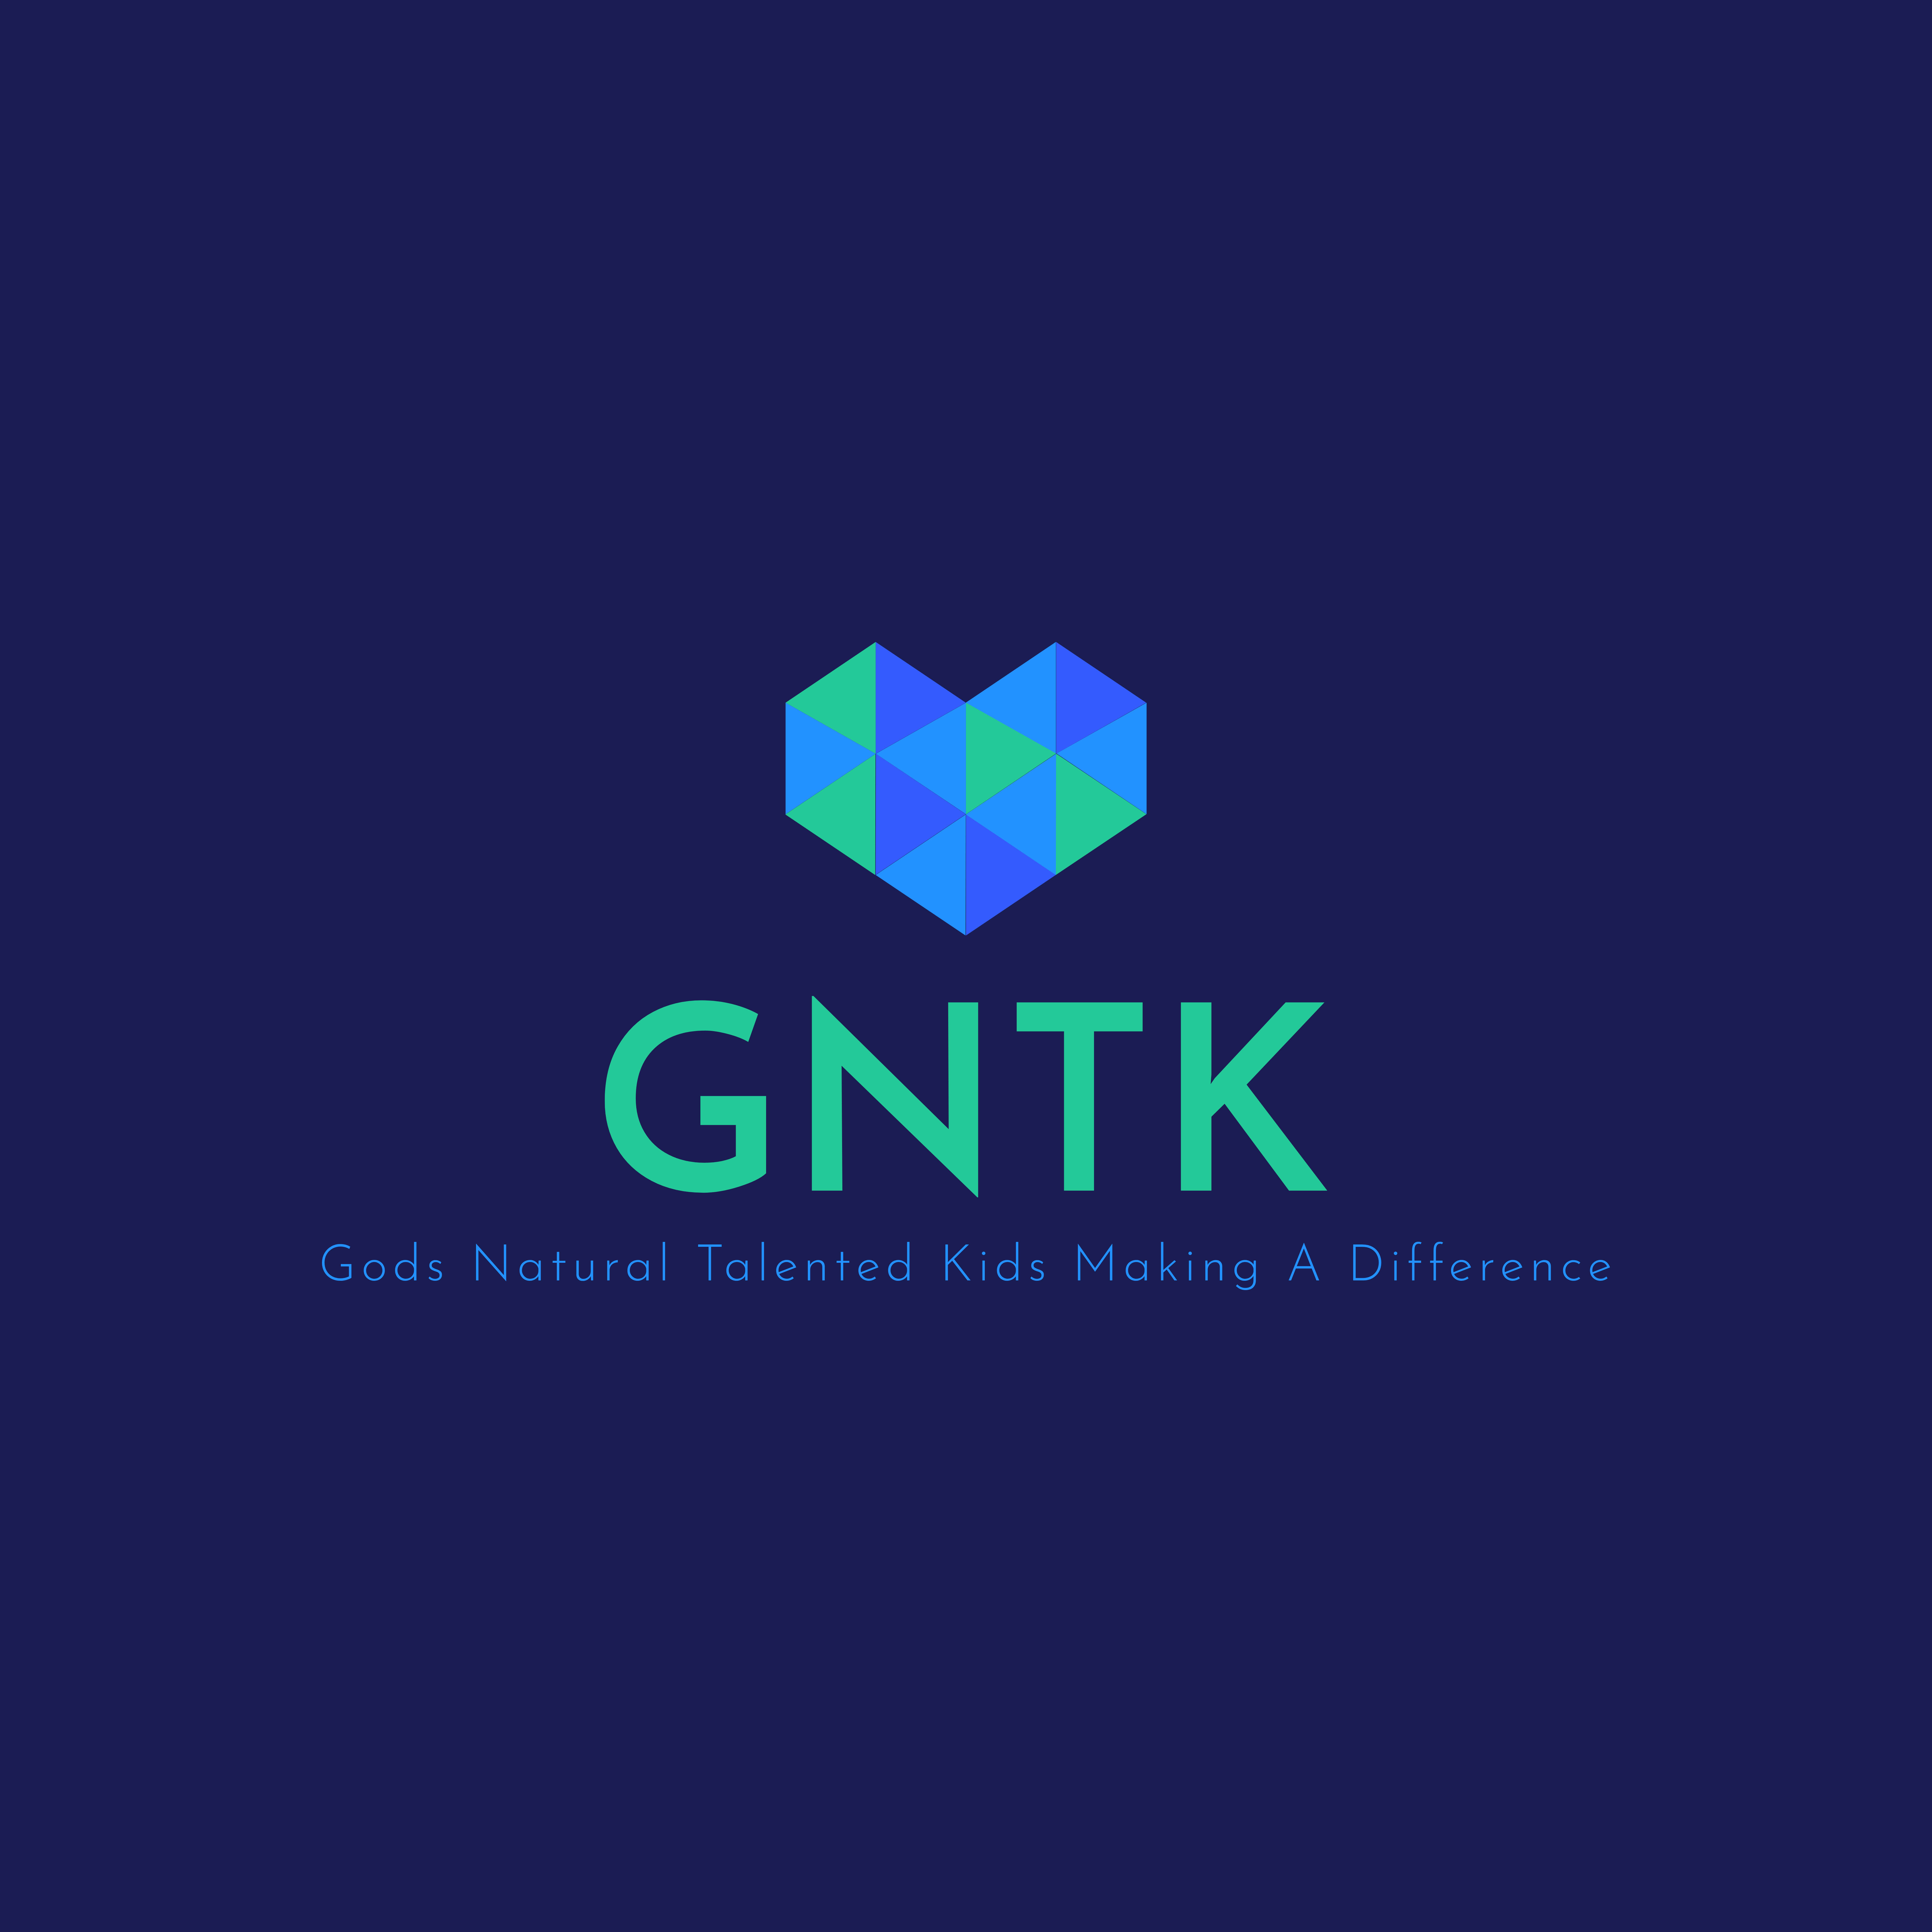 GNTK Gods Natural Talented Kids